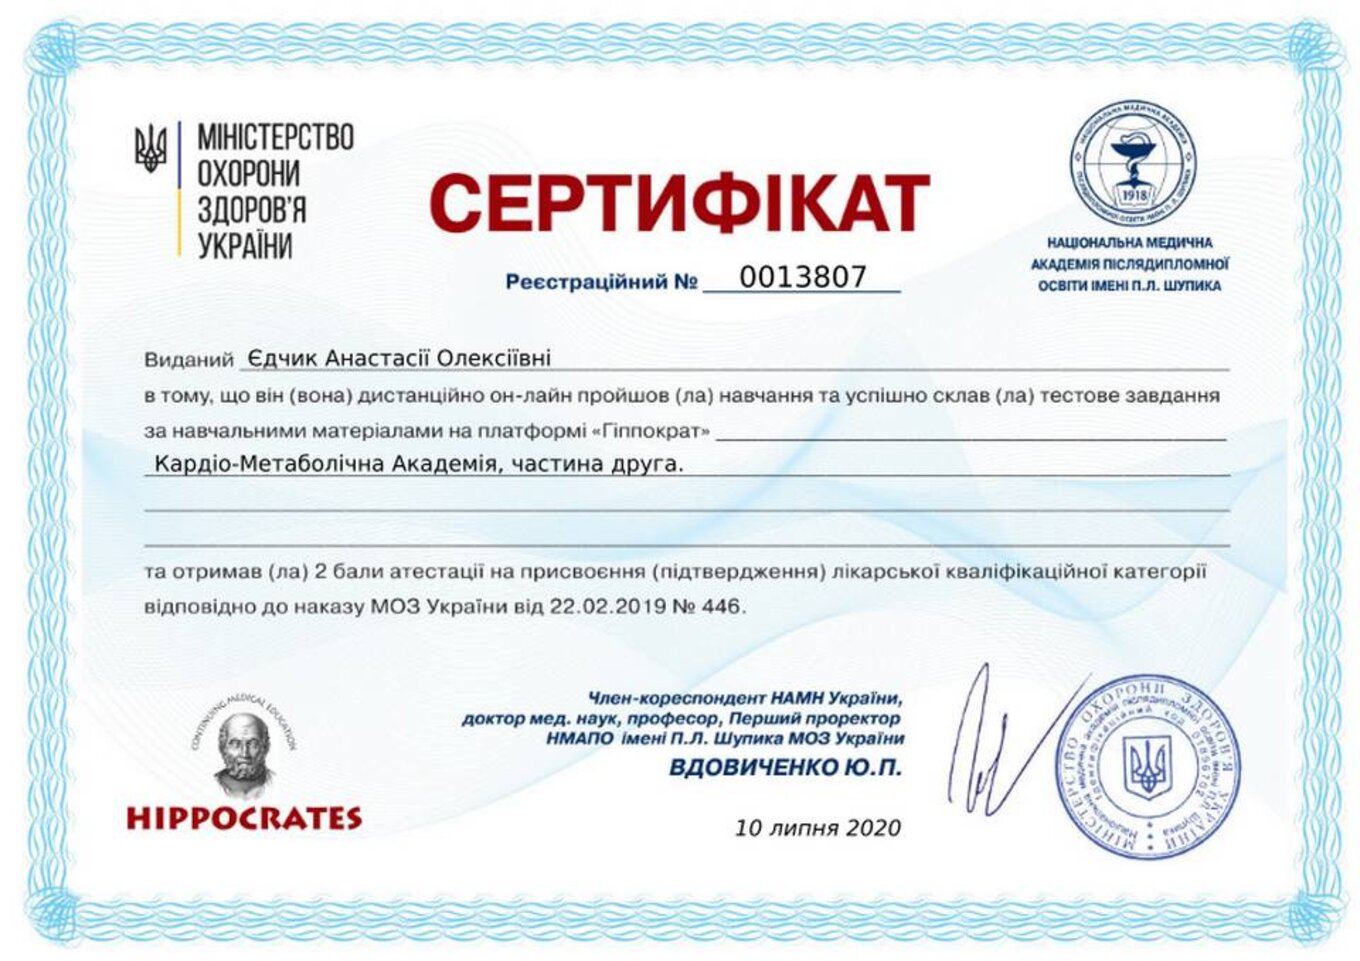 certificates/yedchik-anastasiya-oleksiyivna/erc-edchik-cert-62.jpg